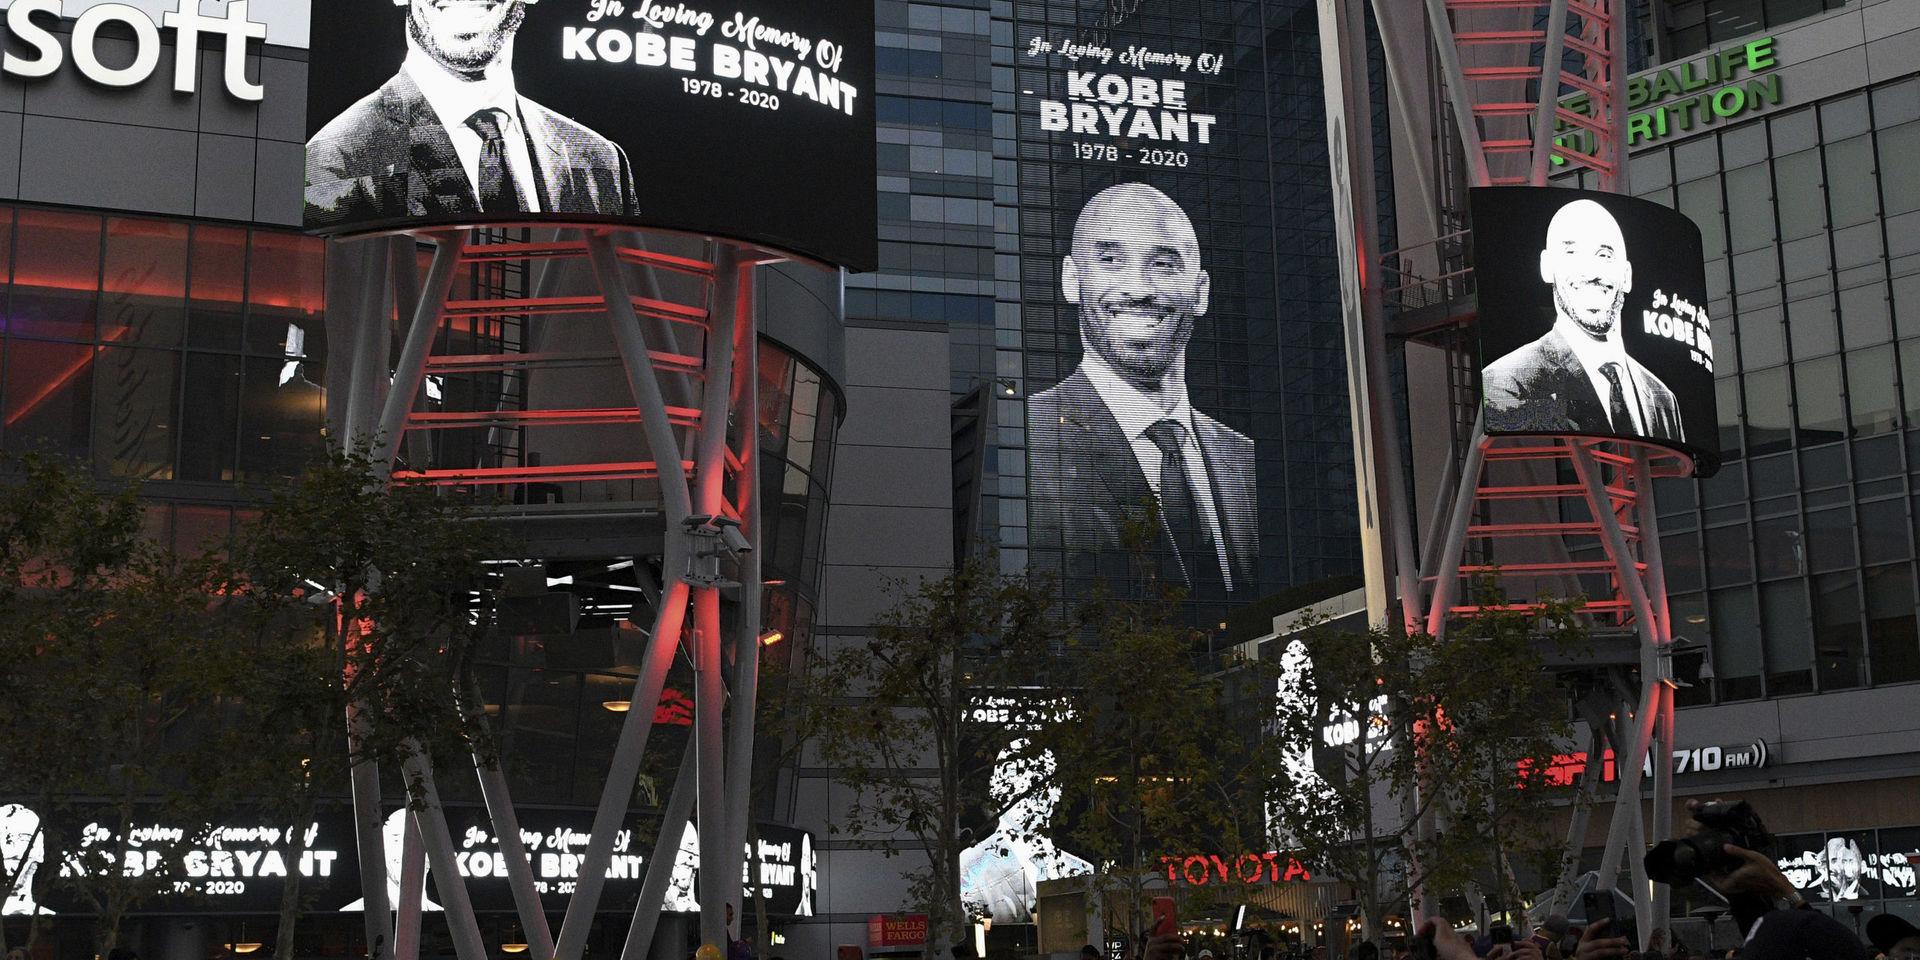 Världen sörjer Kobe Bryant efter helikopterkraschen utanför Los Angeles i söndags. 